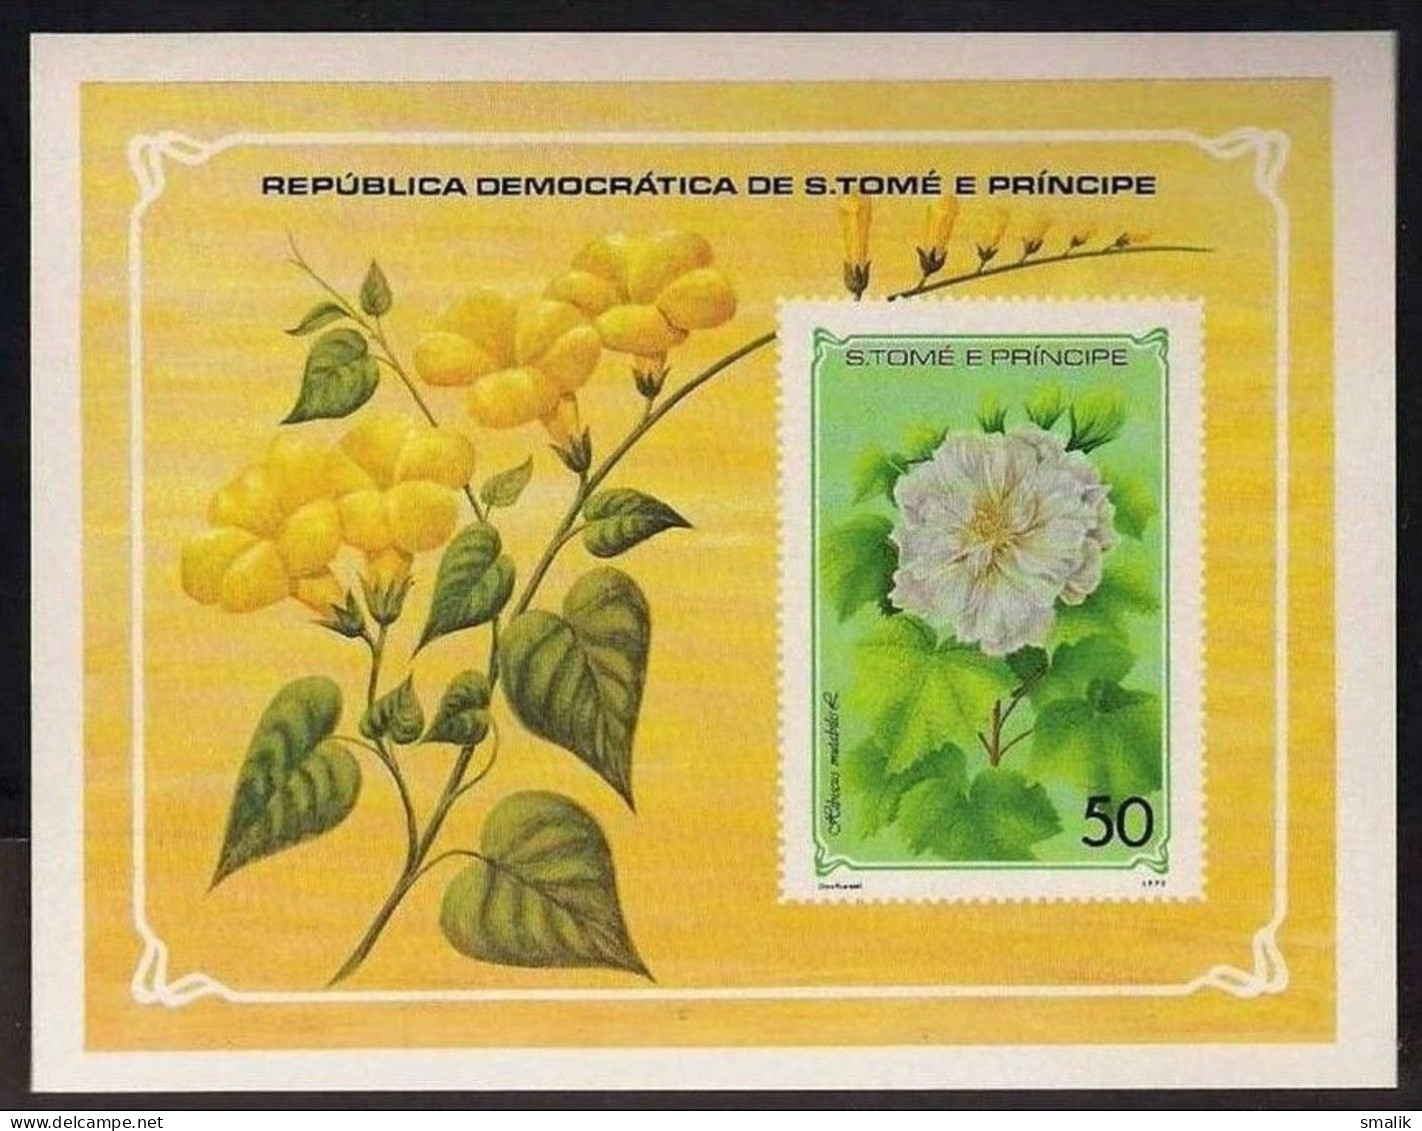 S. TOME E PRINCIPE SAO 1979 - Hibiscus Flowers, Plants, IMPERF Miniature Sheet, MNH - Sao Tome And Principe